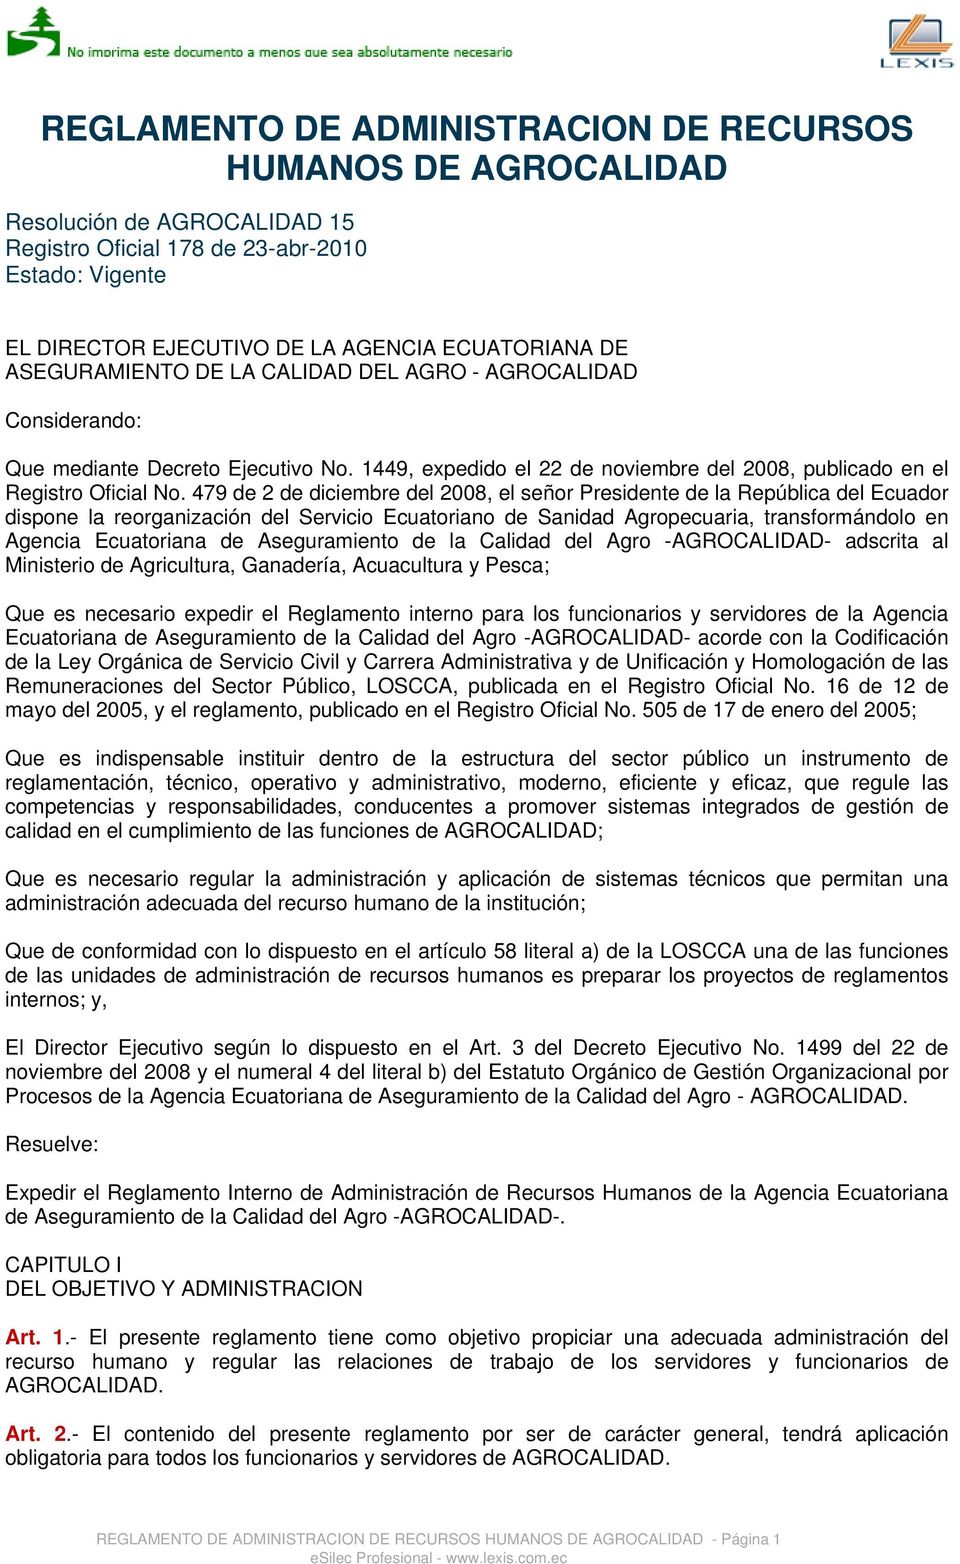 479 de 2 de diciembre del 2008, el señor Presidente de la República del Ecuador dispone la reorganización del Servicio Ecuatoriano de Sanidad Agropecuaria, transformándolo en Agencia Ecuatoriana de